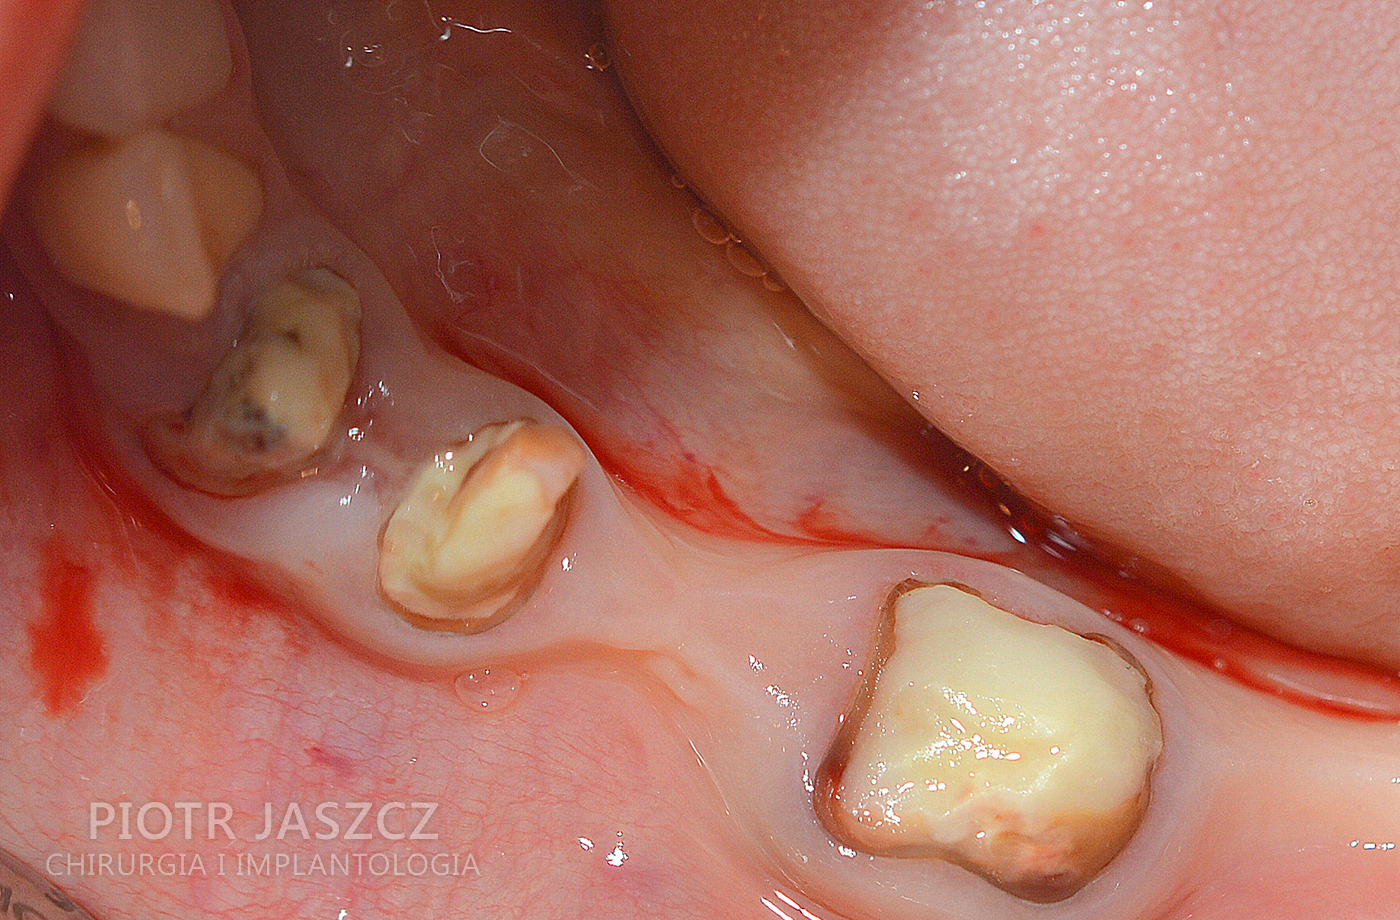 Usunięcie trzech zębów dolnych z jednoczesnym wszczepieniem trzech implantów oraz regeneracją kości przy użyciu materiału kościozastępczego oraz kości autogennej. Widoczny most ostateczny na trzech implantach odtwarzający 4 zęby w żuchwie.